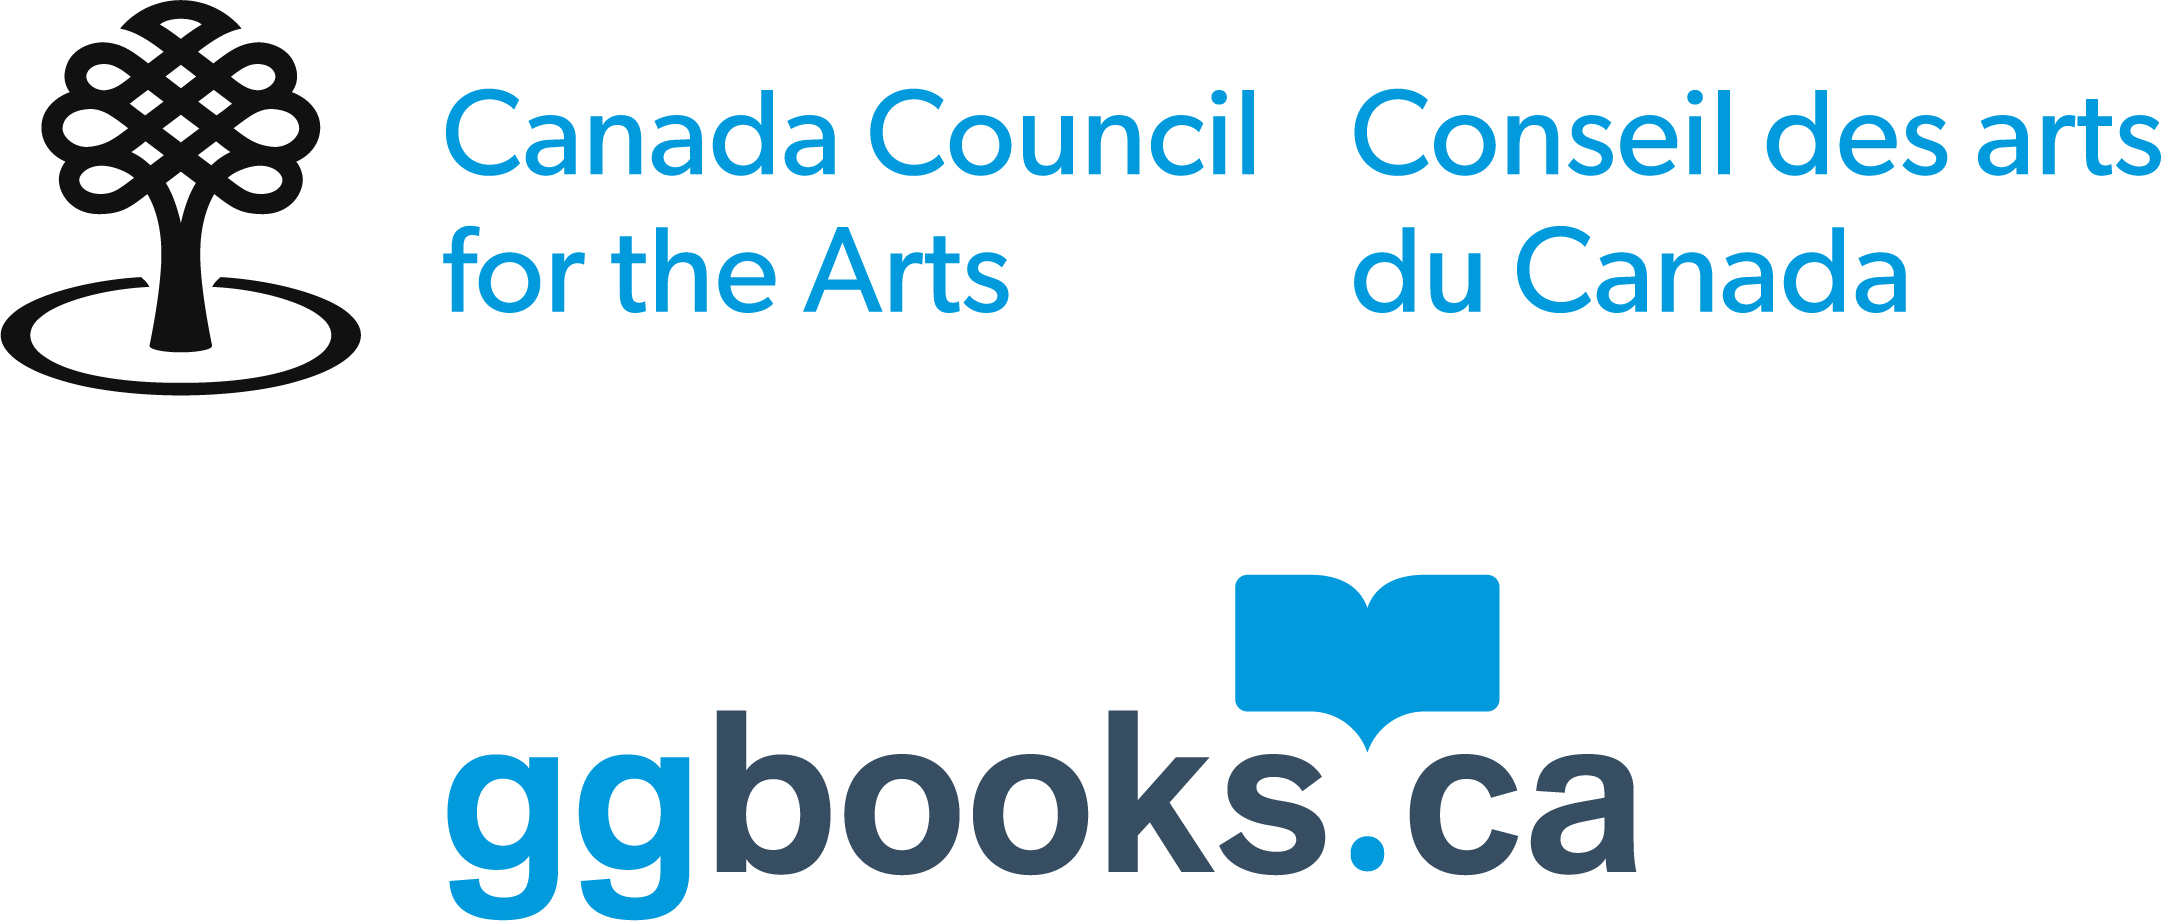 GG Books / Canada Council logo